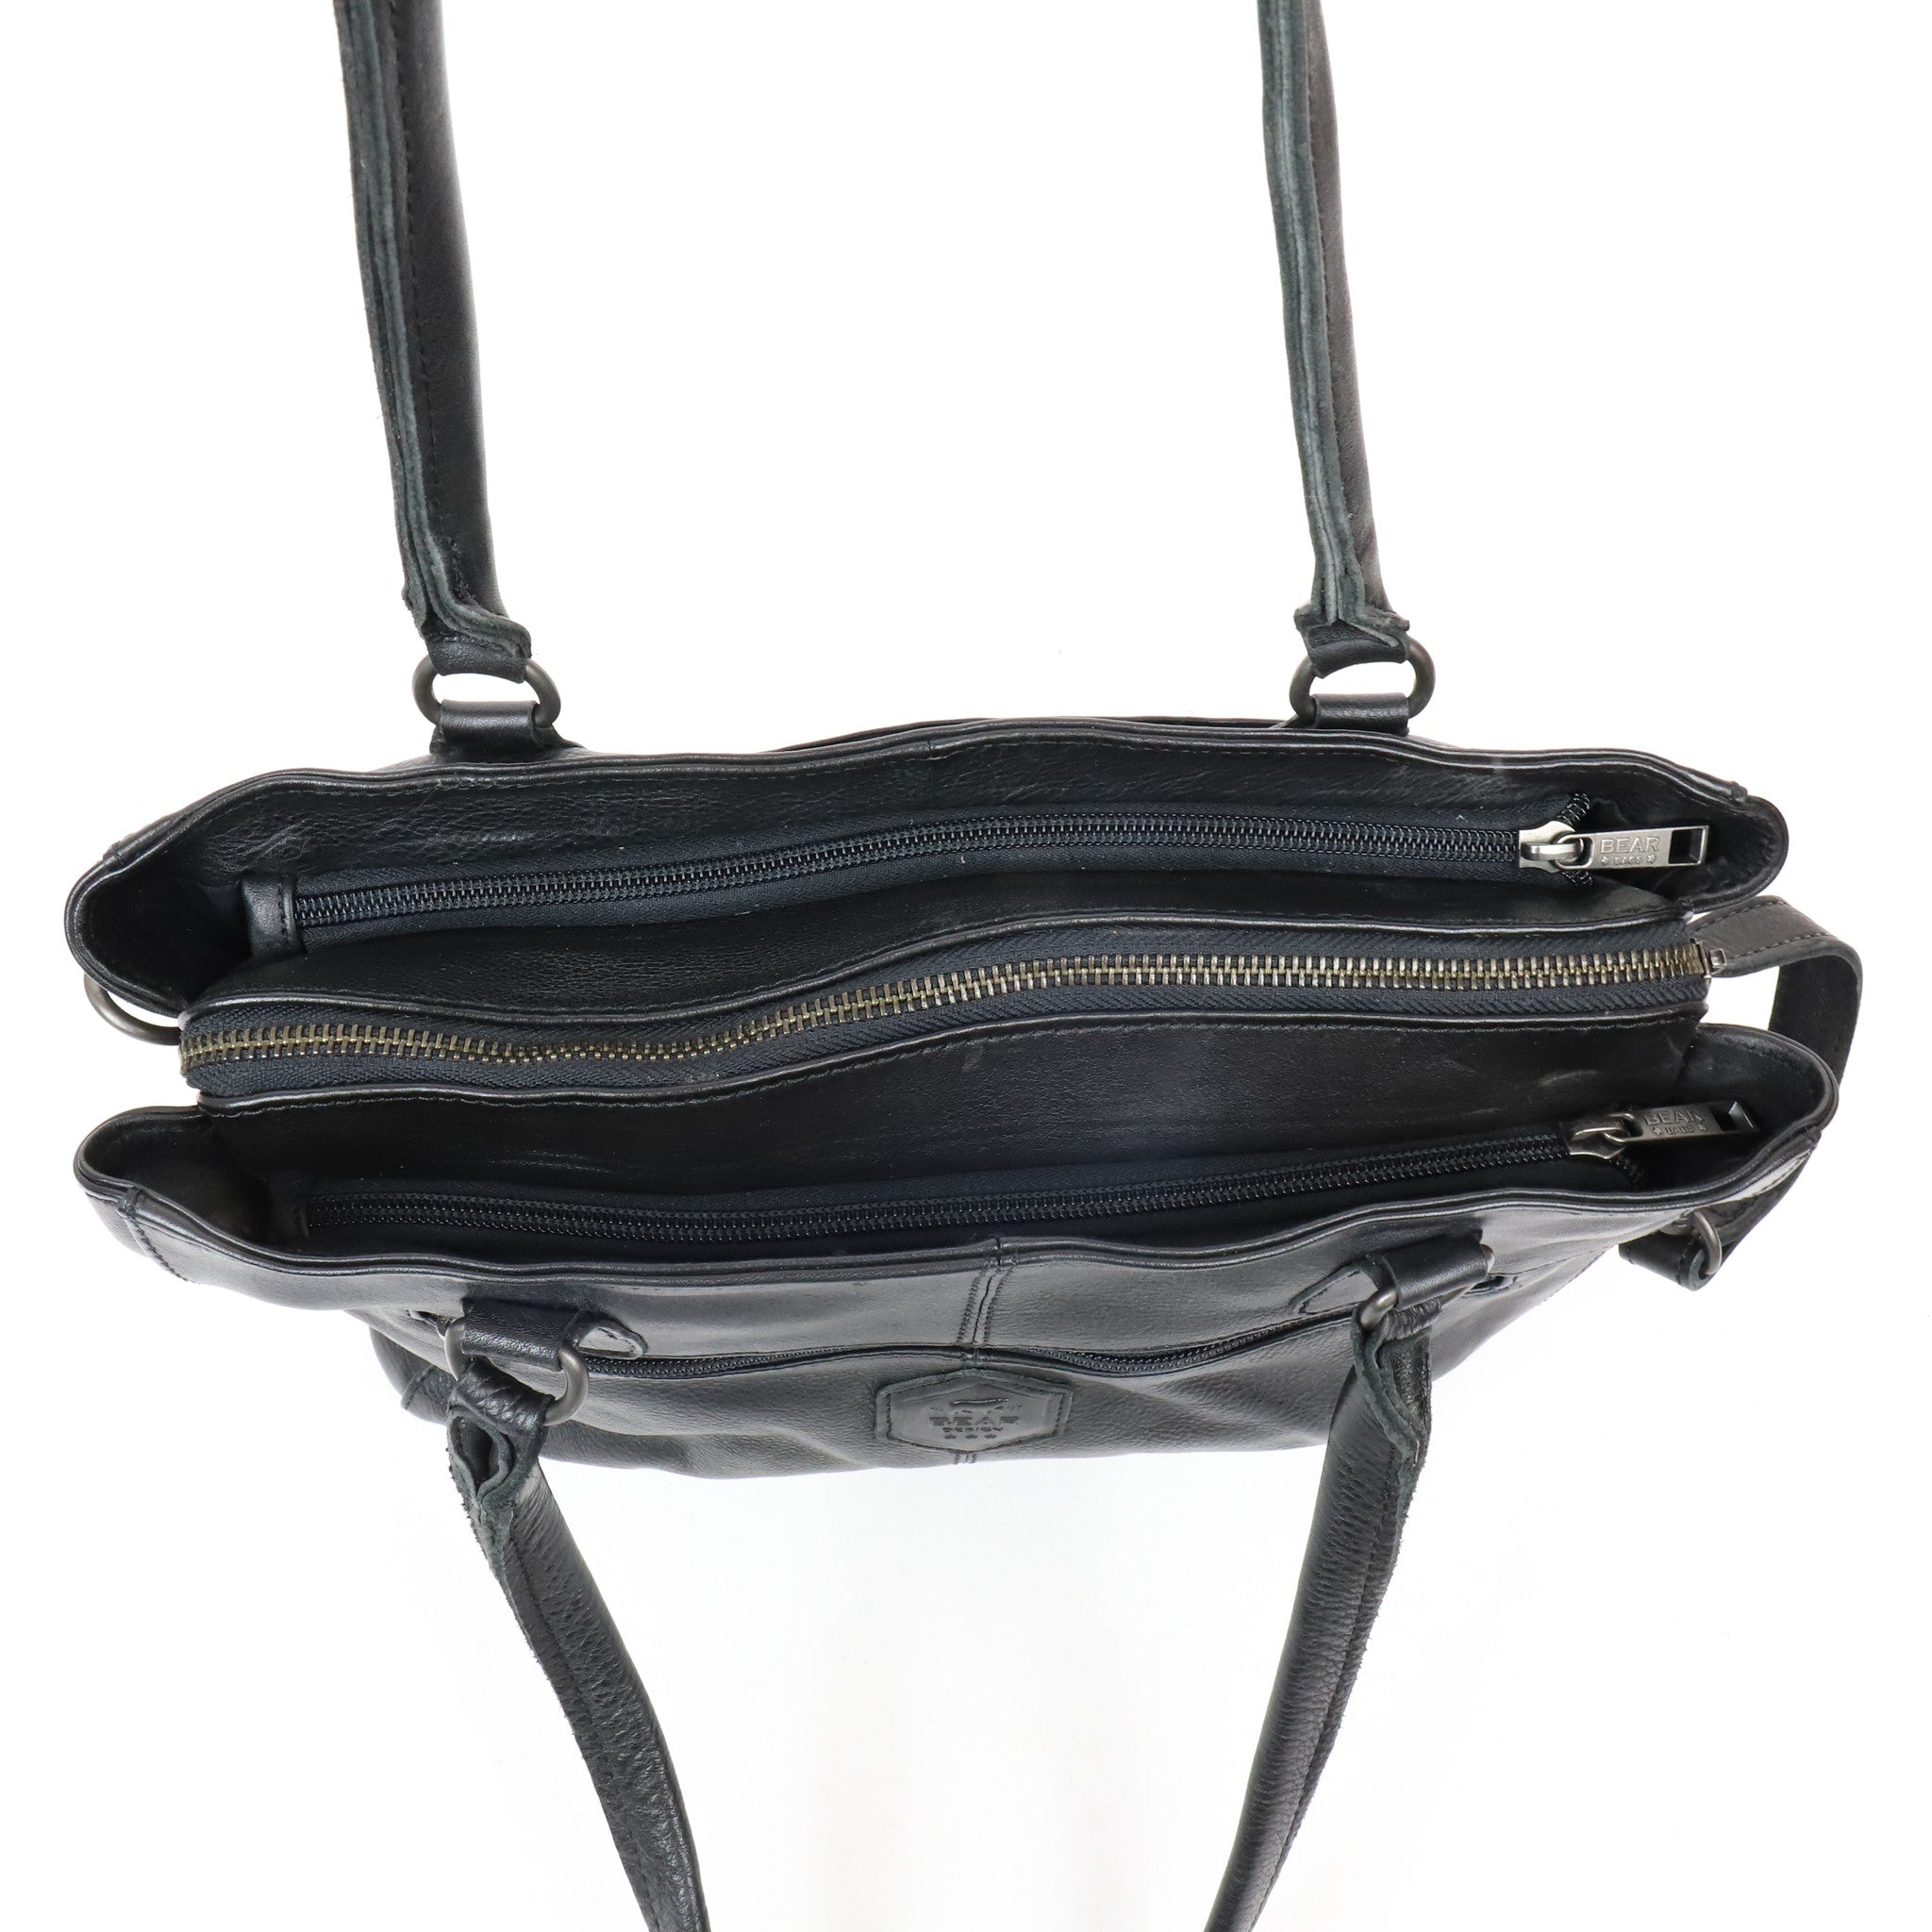 Hand/shoulder bag 'Ankie' black - CP 1263